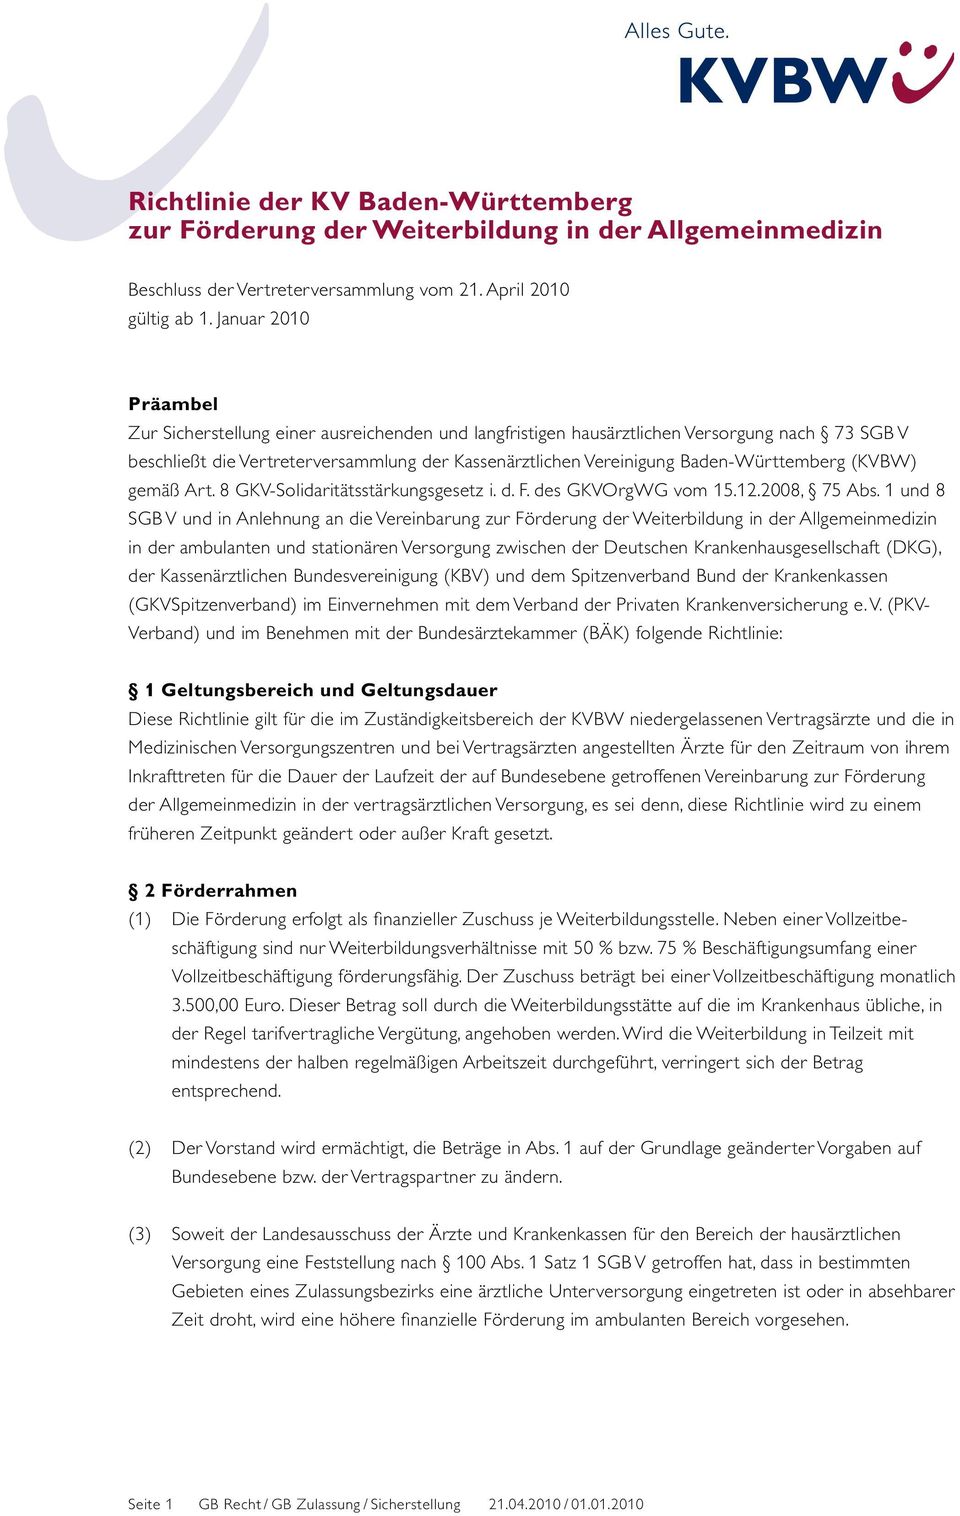 Baden-Württemberg (KVBW) gemäß Art. 8 GKV-Solidaritätsstärkungsgesetz i. d. F. des GKVOrgWG vom 15.12.2008, 75 Abs.